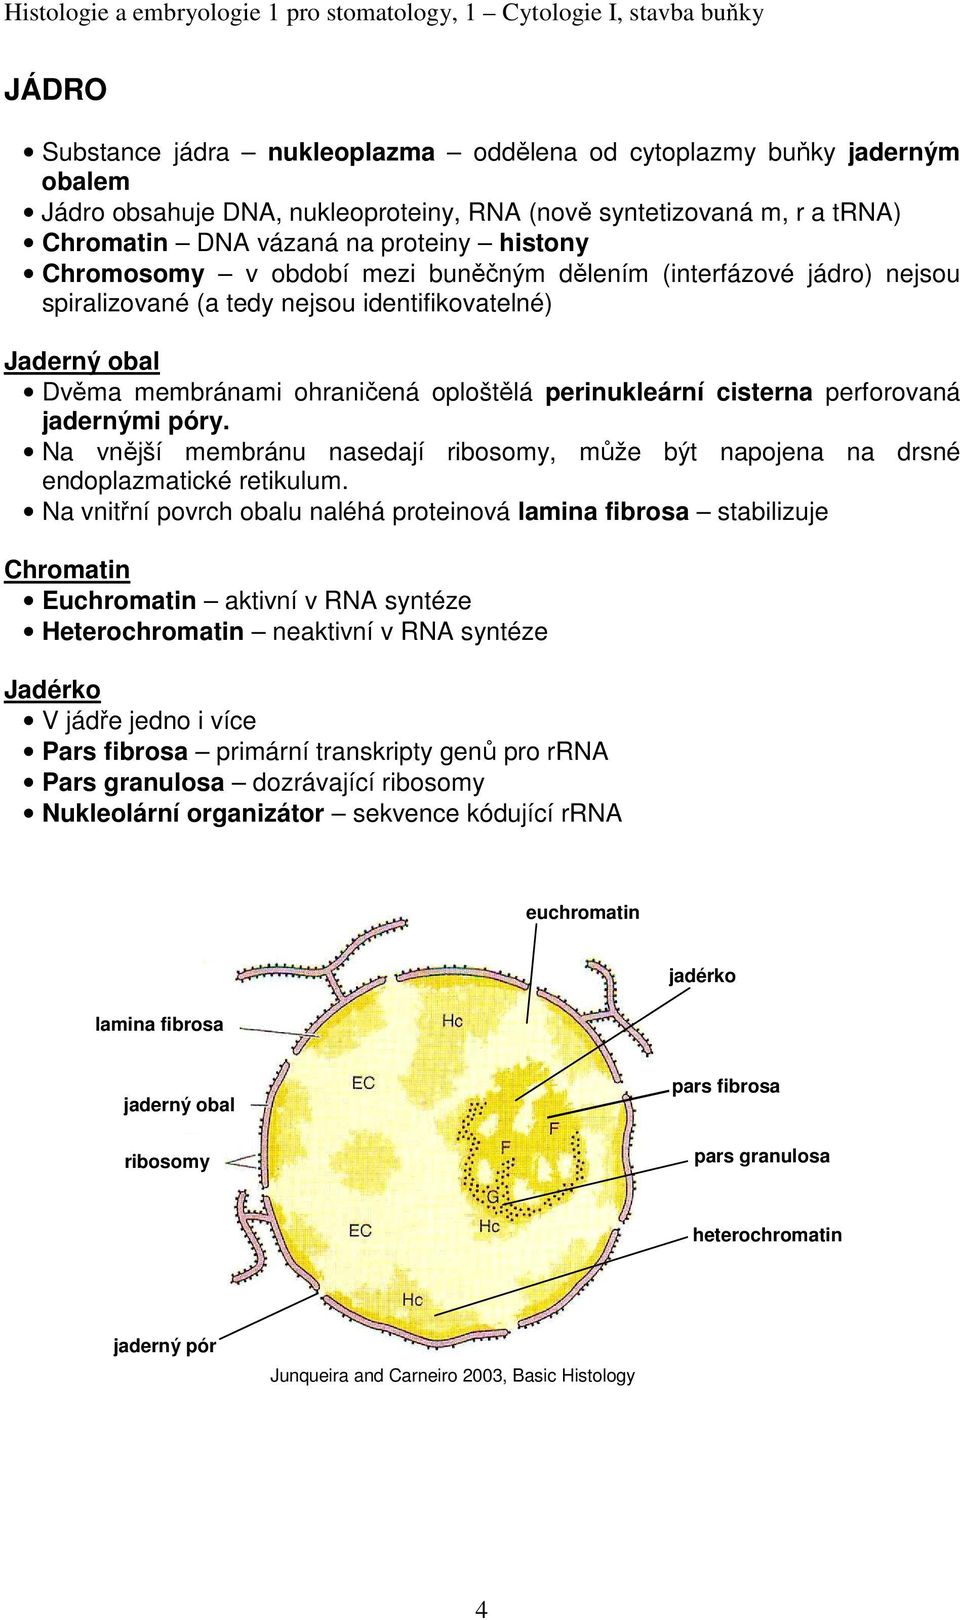 perforovaná jadernými póry. Na vnější membránu nasedají ribosomy, může být napojena na drsné endoplazmatické retikulum.